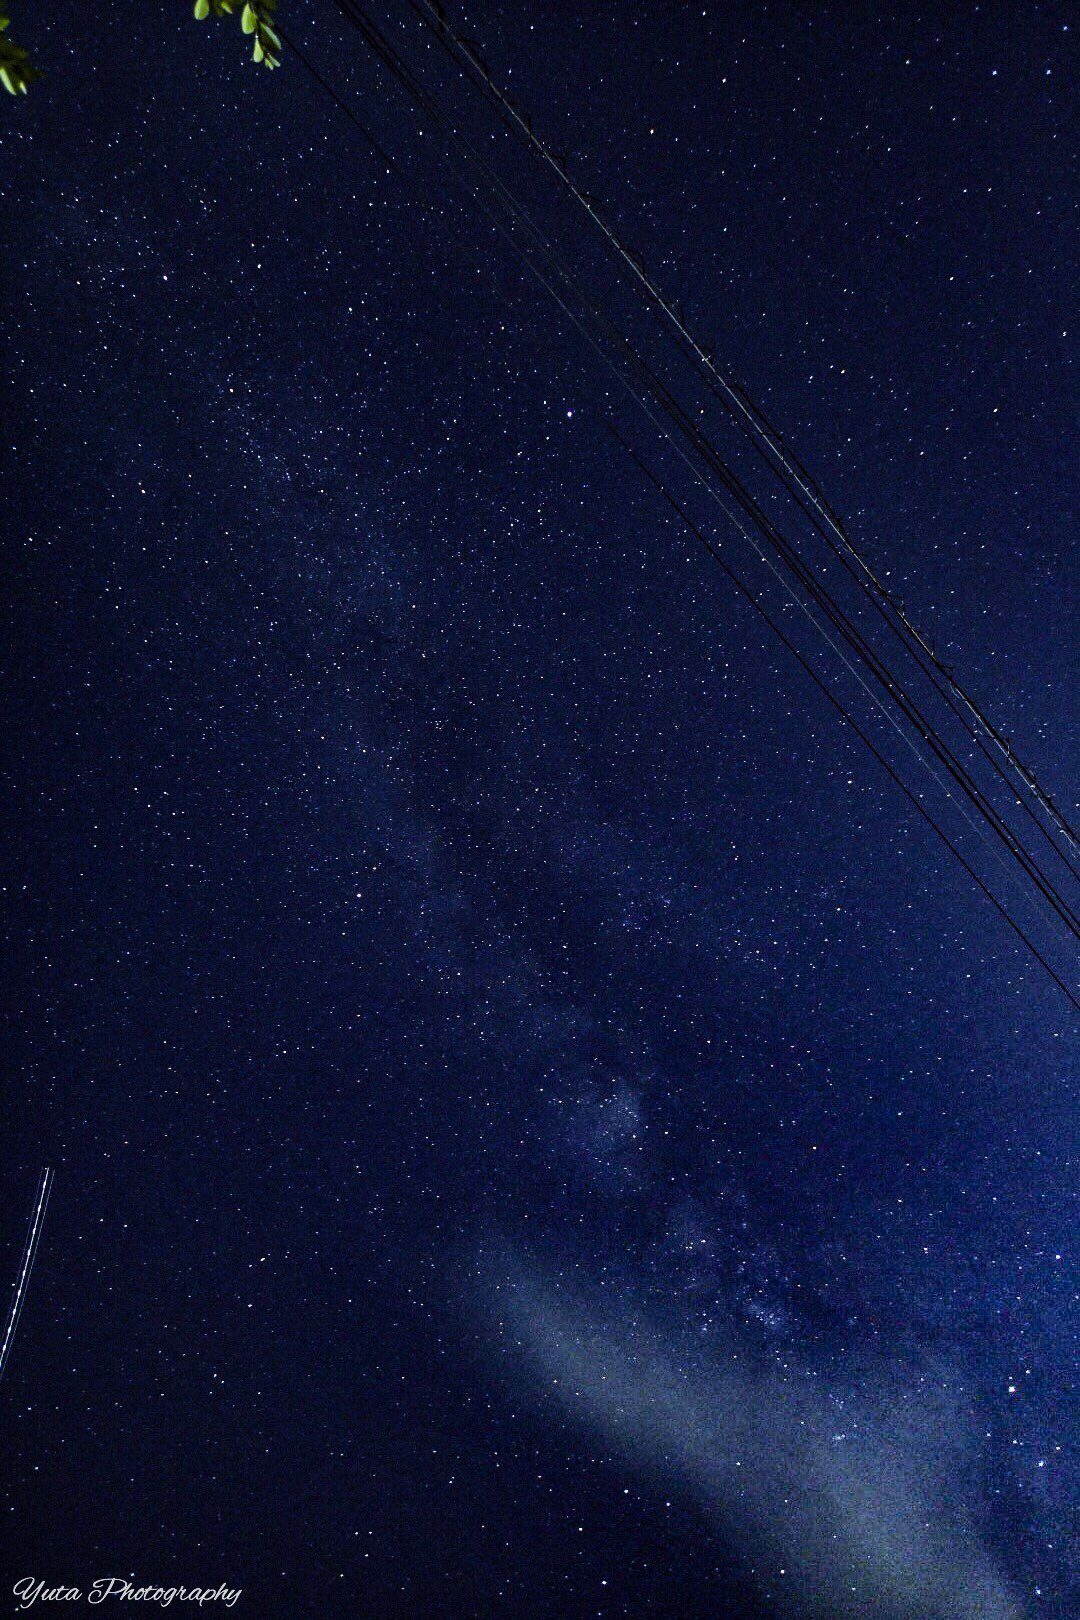 ゆーた Twitterren 成田で撮影 天の川と流れ星 カメラっ肉眼で見えないものまで写してくれるヤバイものだと改めて思った 成田だよこれ 天の川 流れ星 写真で伝えたい私の世界 T Co Jcntgbbfob Twitter